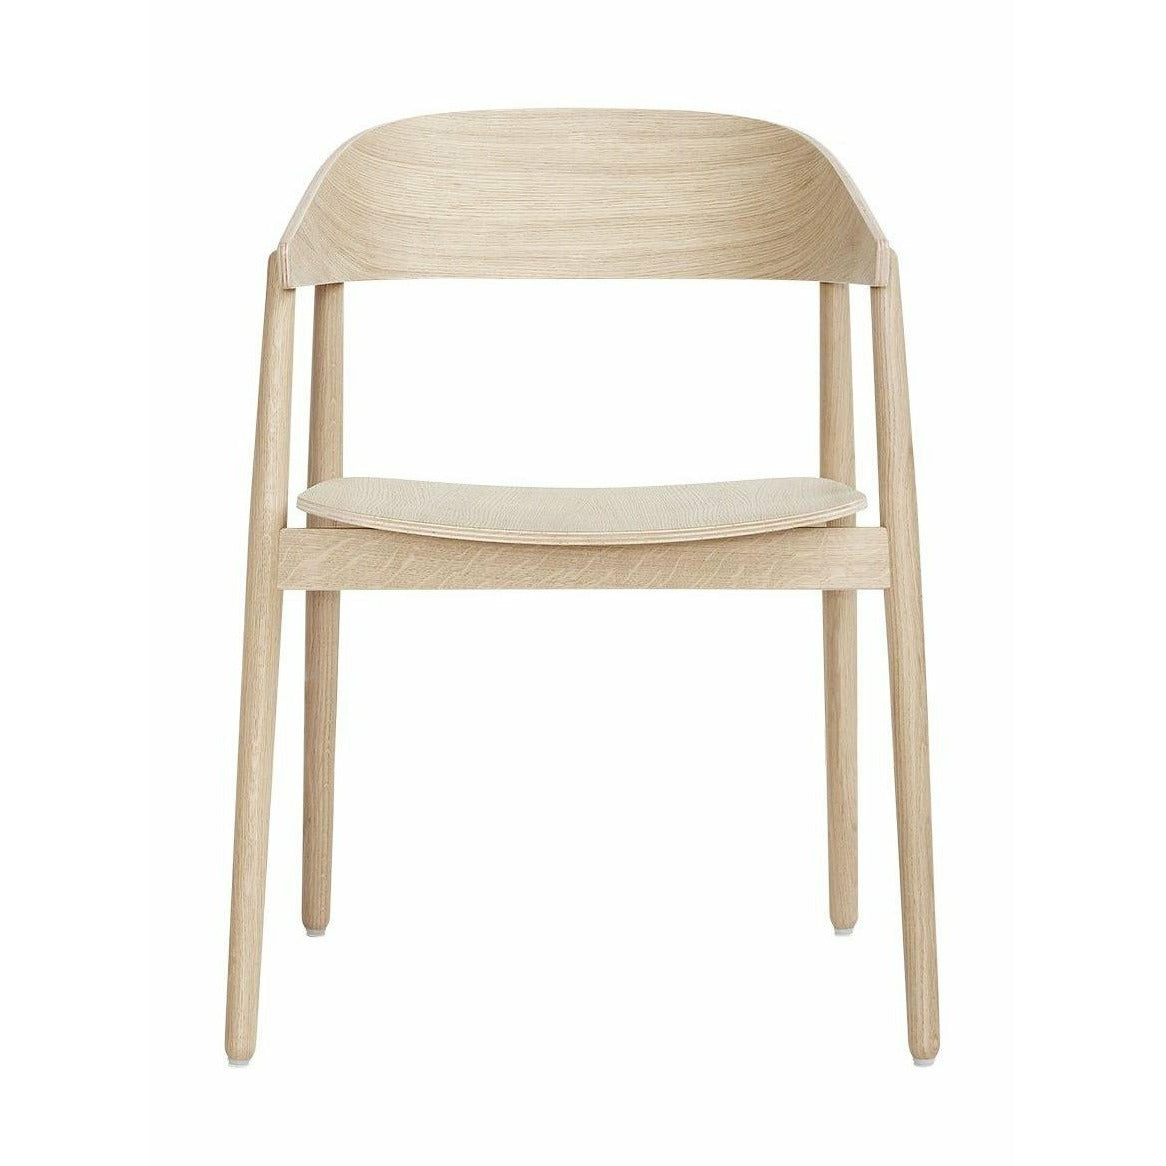 Andersen Furniture AC2 židle dub, bílý pigmentovaný lakovaný